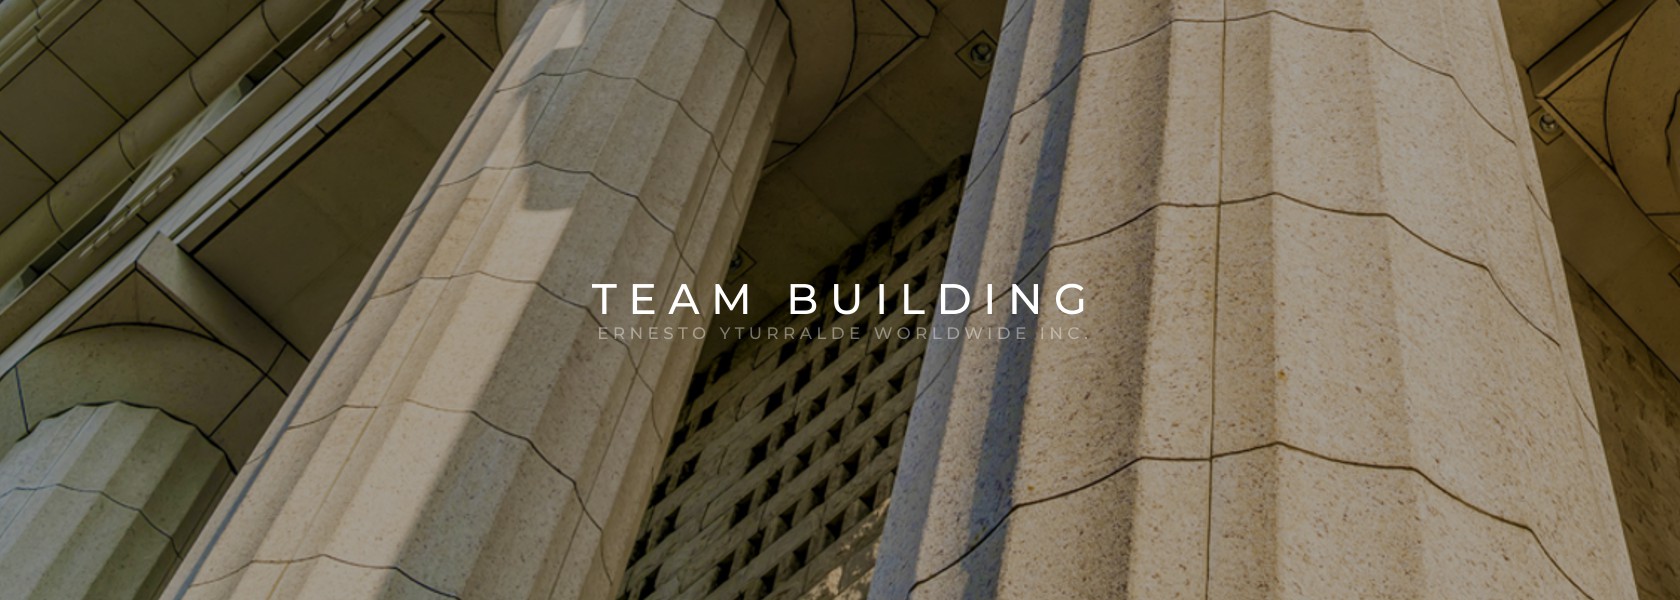 Cuba Team Building Corporativo Vivencial Online para el desarrollo de equipos de trabajo